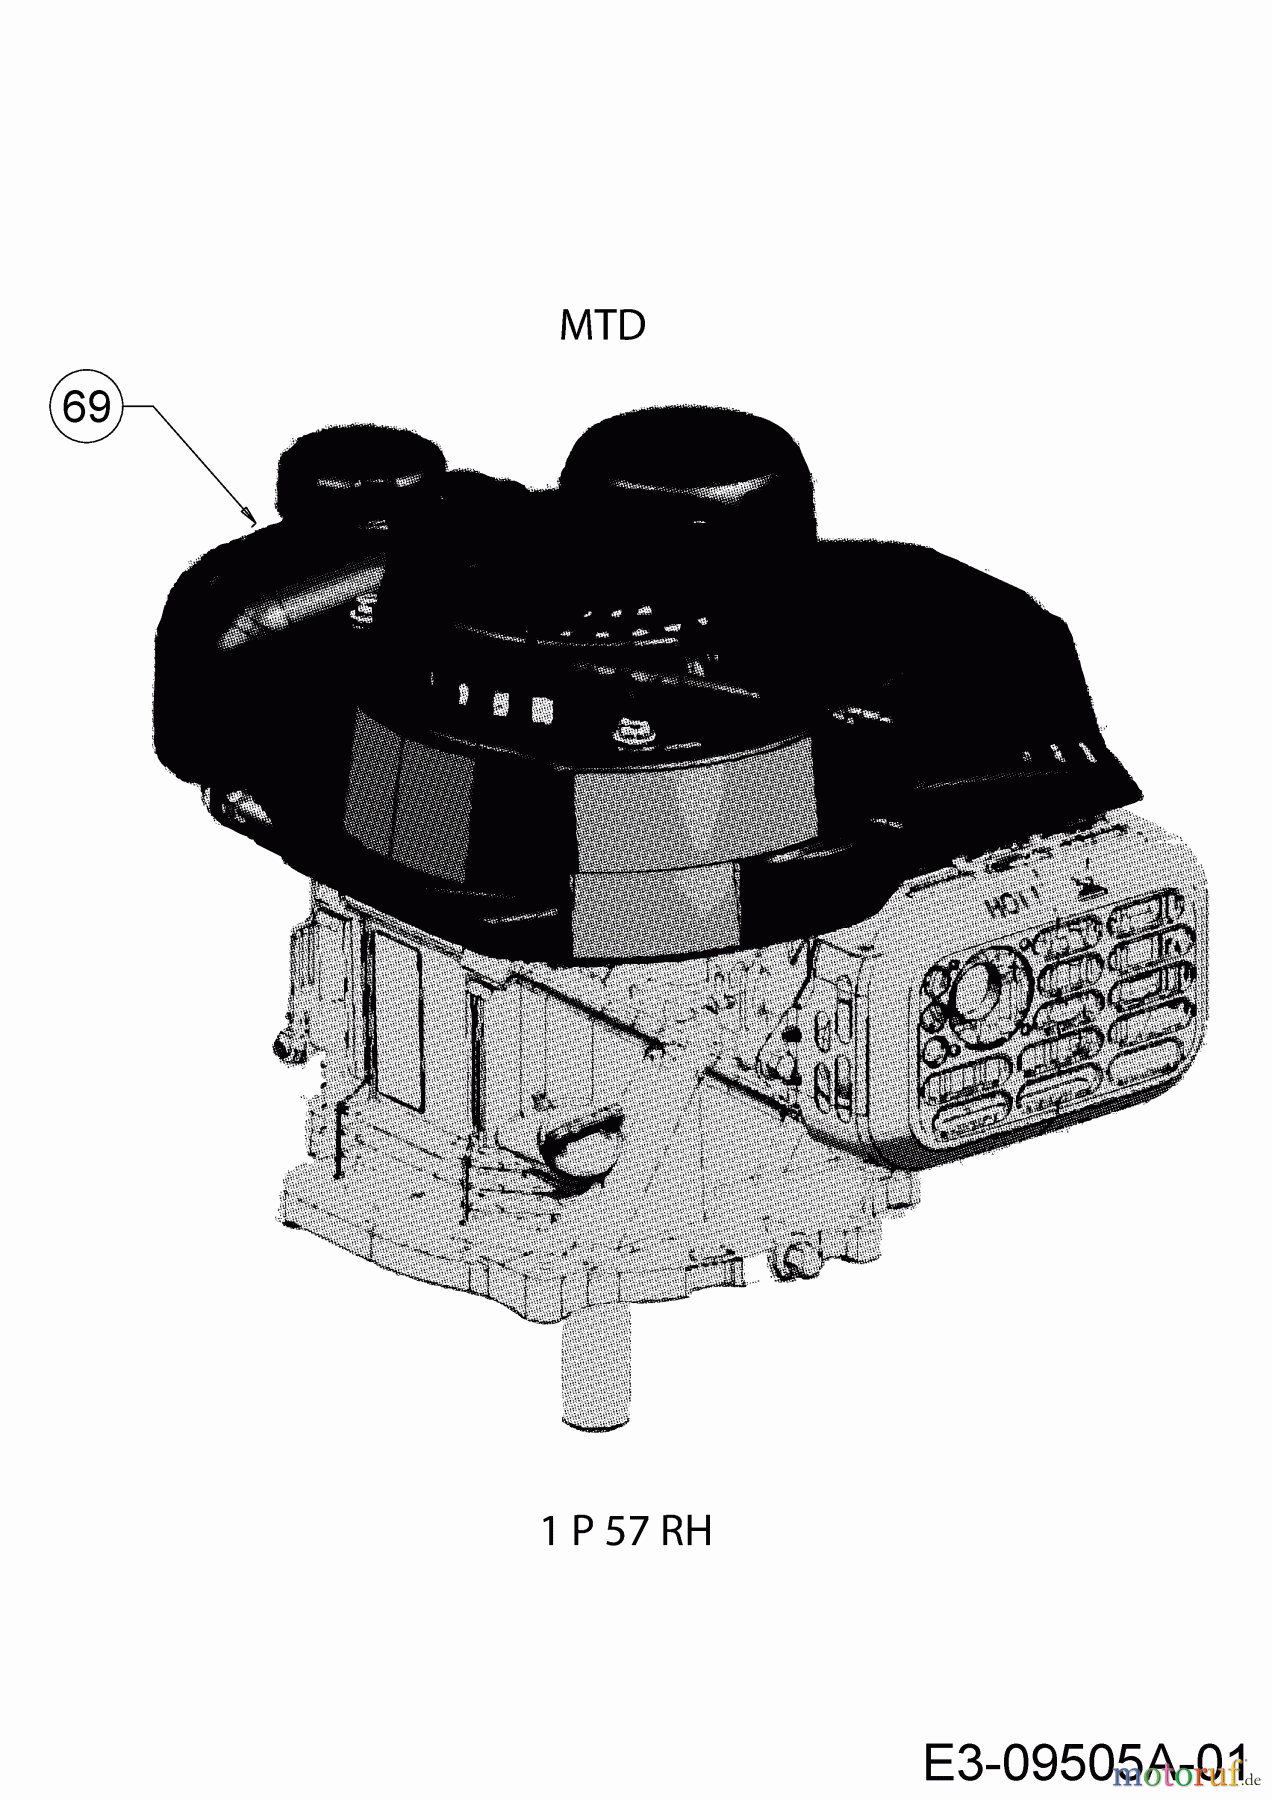  MTD Motormäher mit Antrieb Smart 42 SPO 12D-LASJ600  (2018) Motor MTD